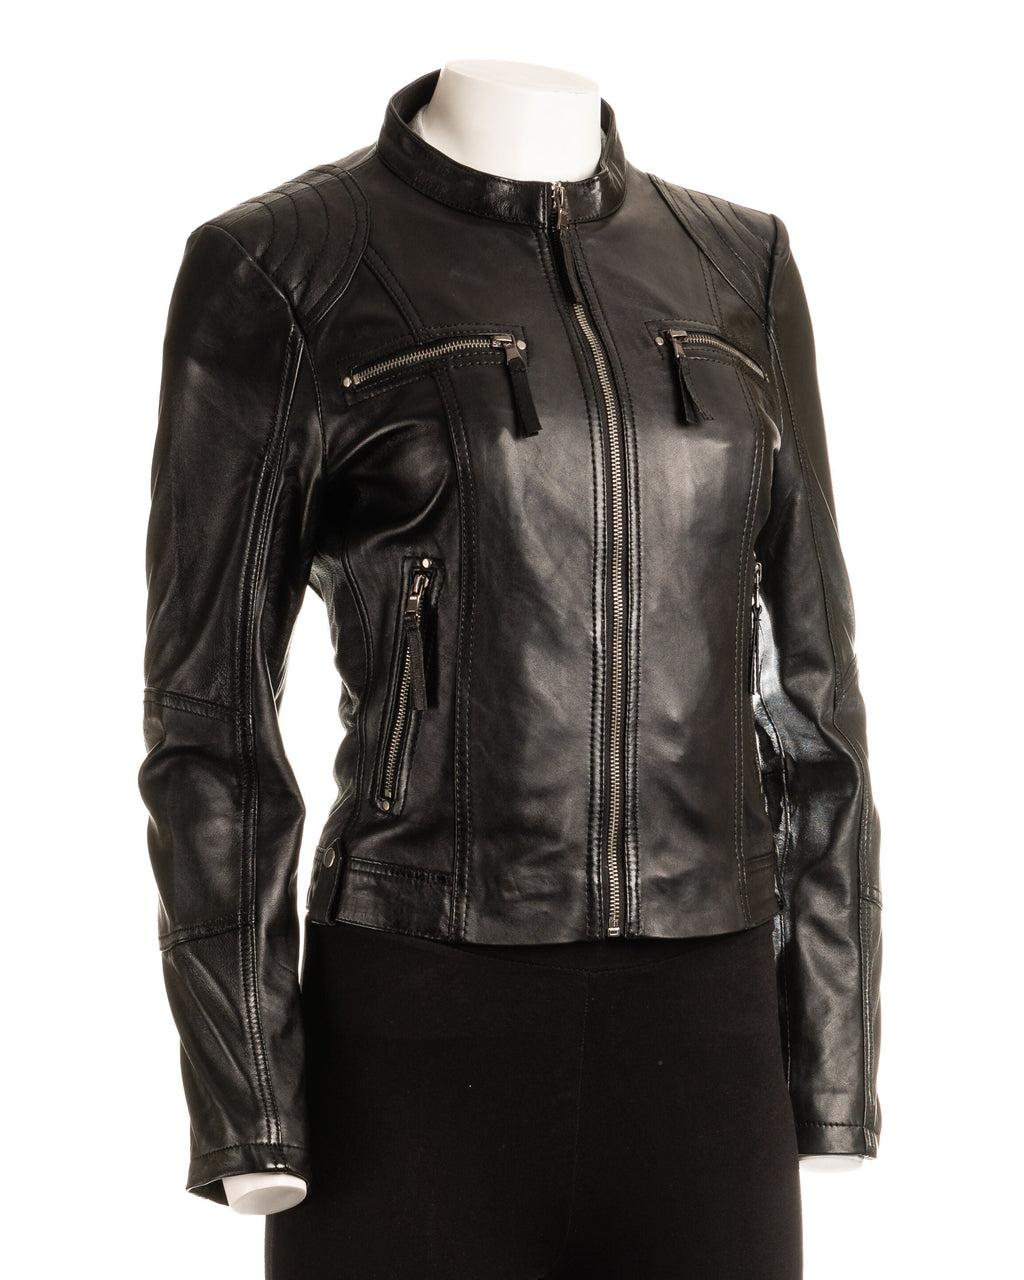 Ladies Taupe Biker Style Leather Jacket: Greta